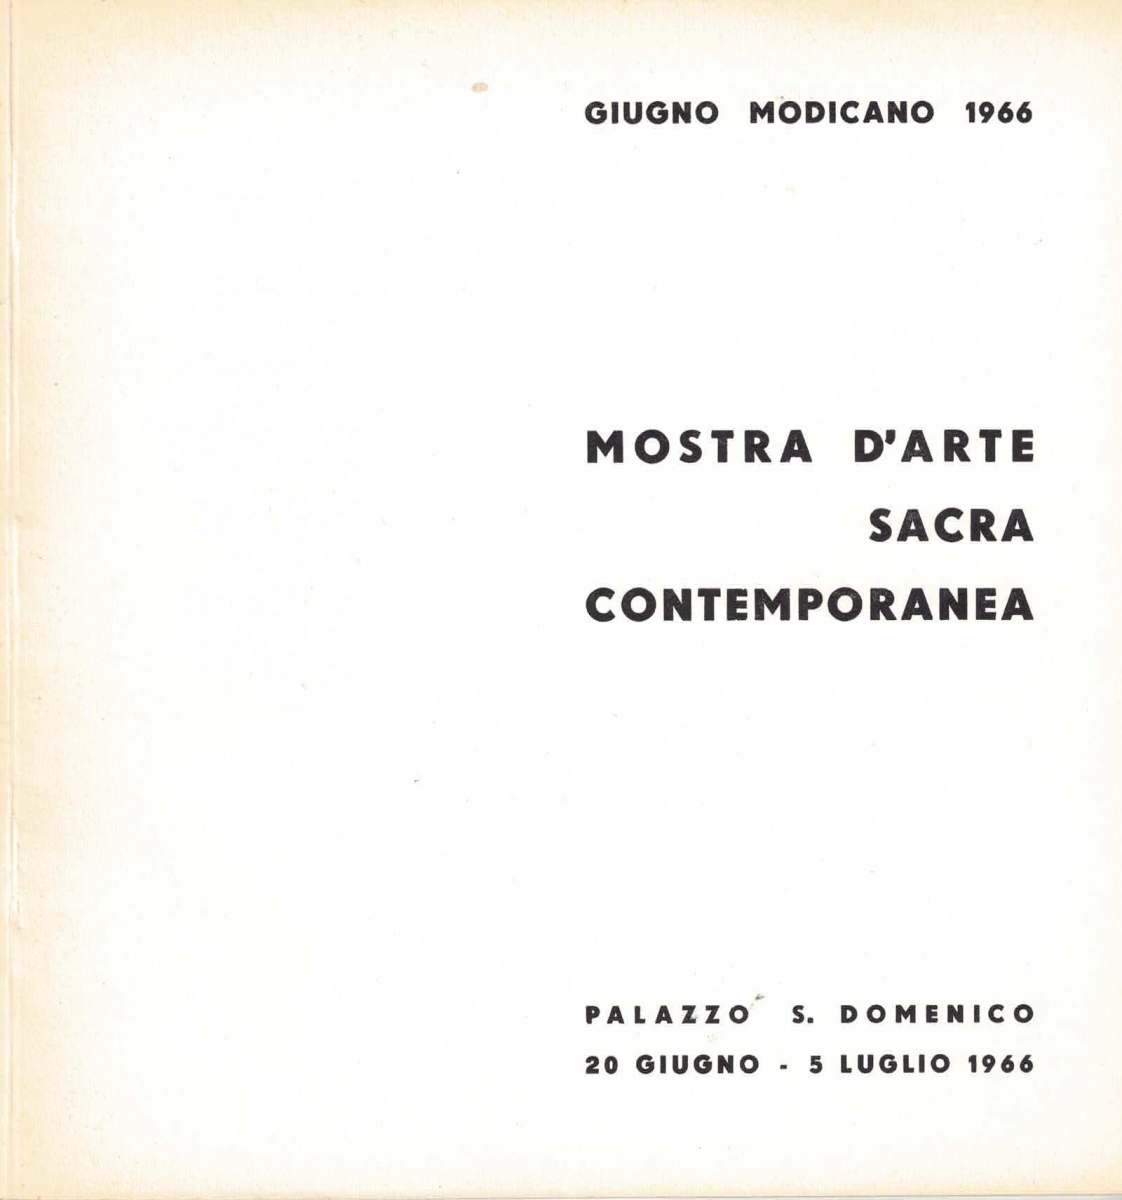 Catalogo mostra d'arte sacra  - Modica - 1966